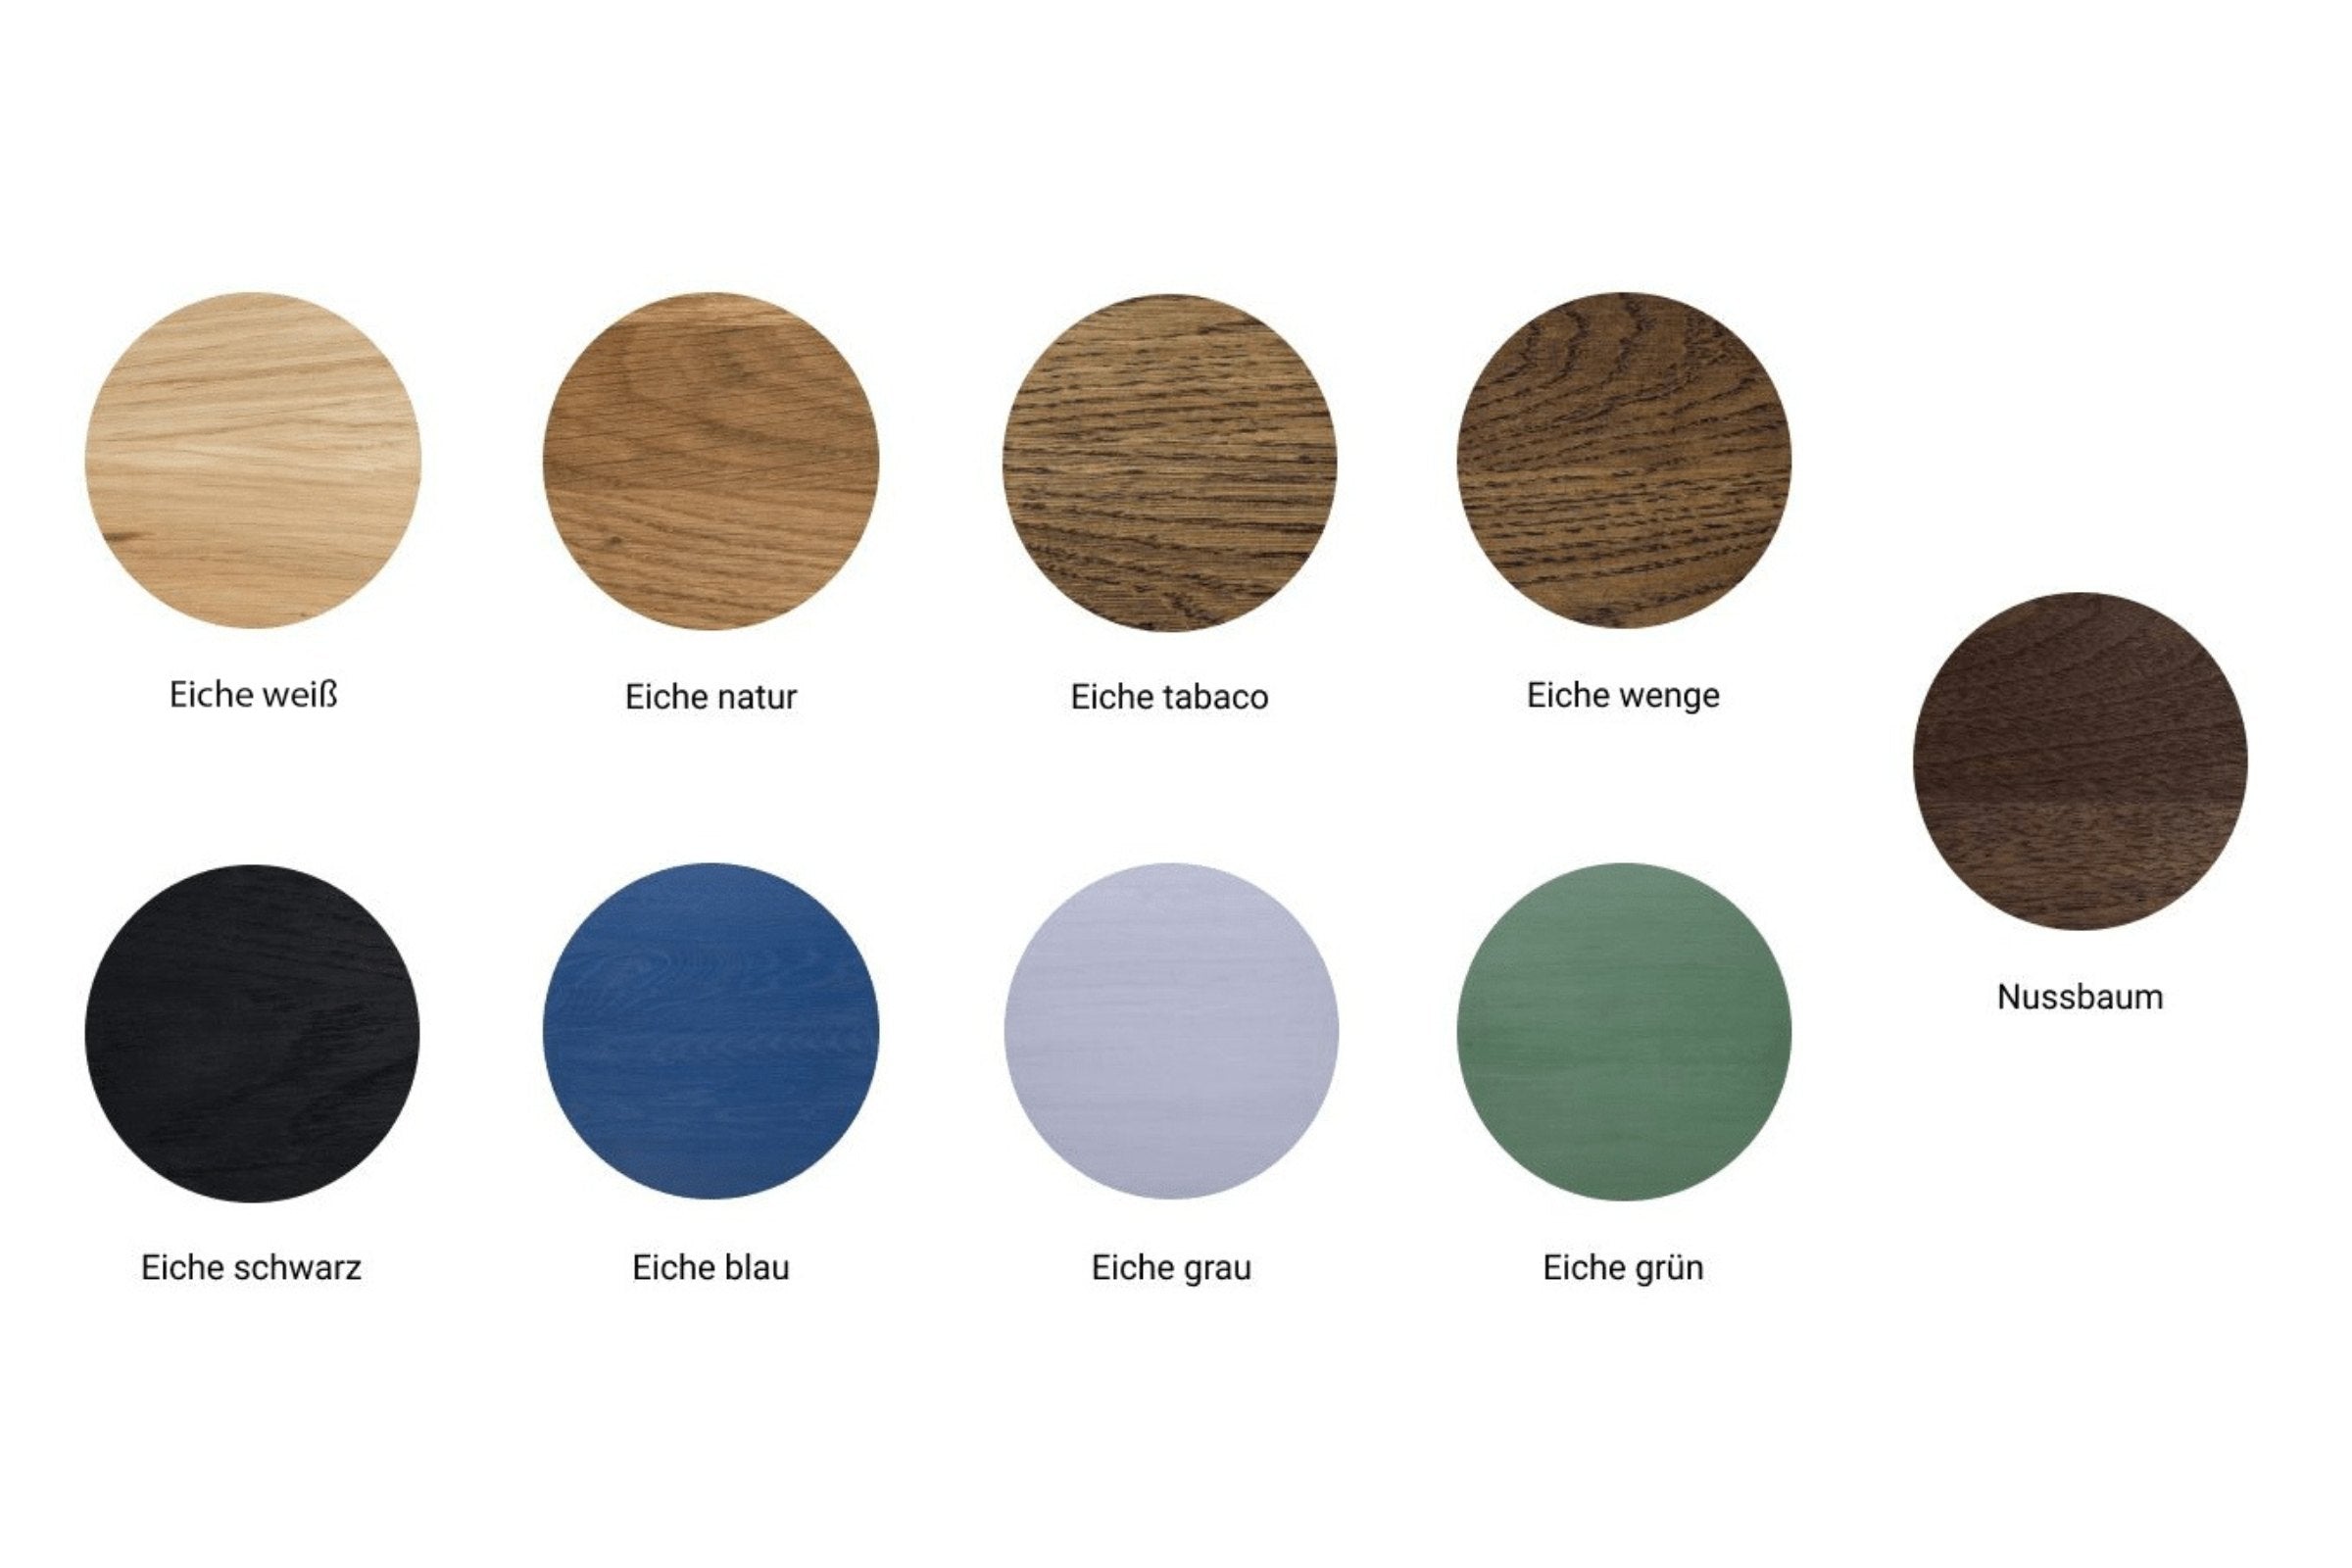 Holzmuster in verschiedenen Farben: Eiche weiß, Eiche natur, Eiche tabaco, Eiche wenge, Nussbaum, Eiche schwarz, Eiche blau, Eiche grau und Eiche grün